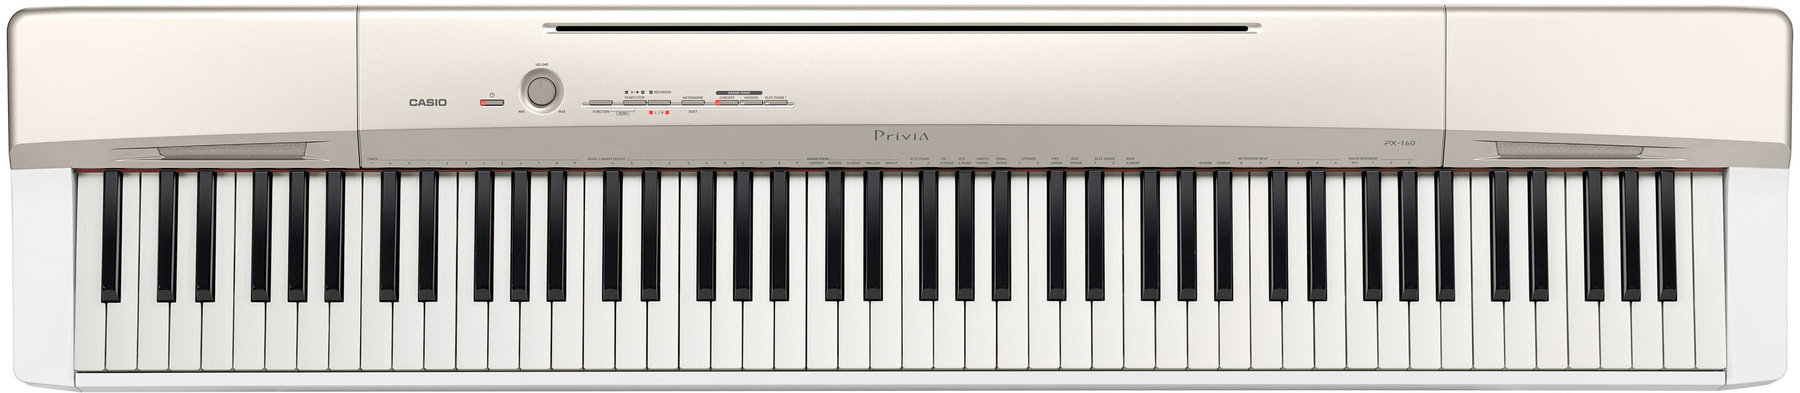 Digitální stage piano Casio PX-160GD Digitální stage piano